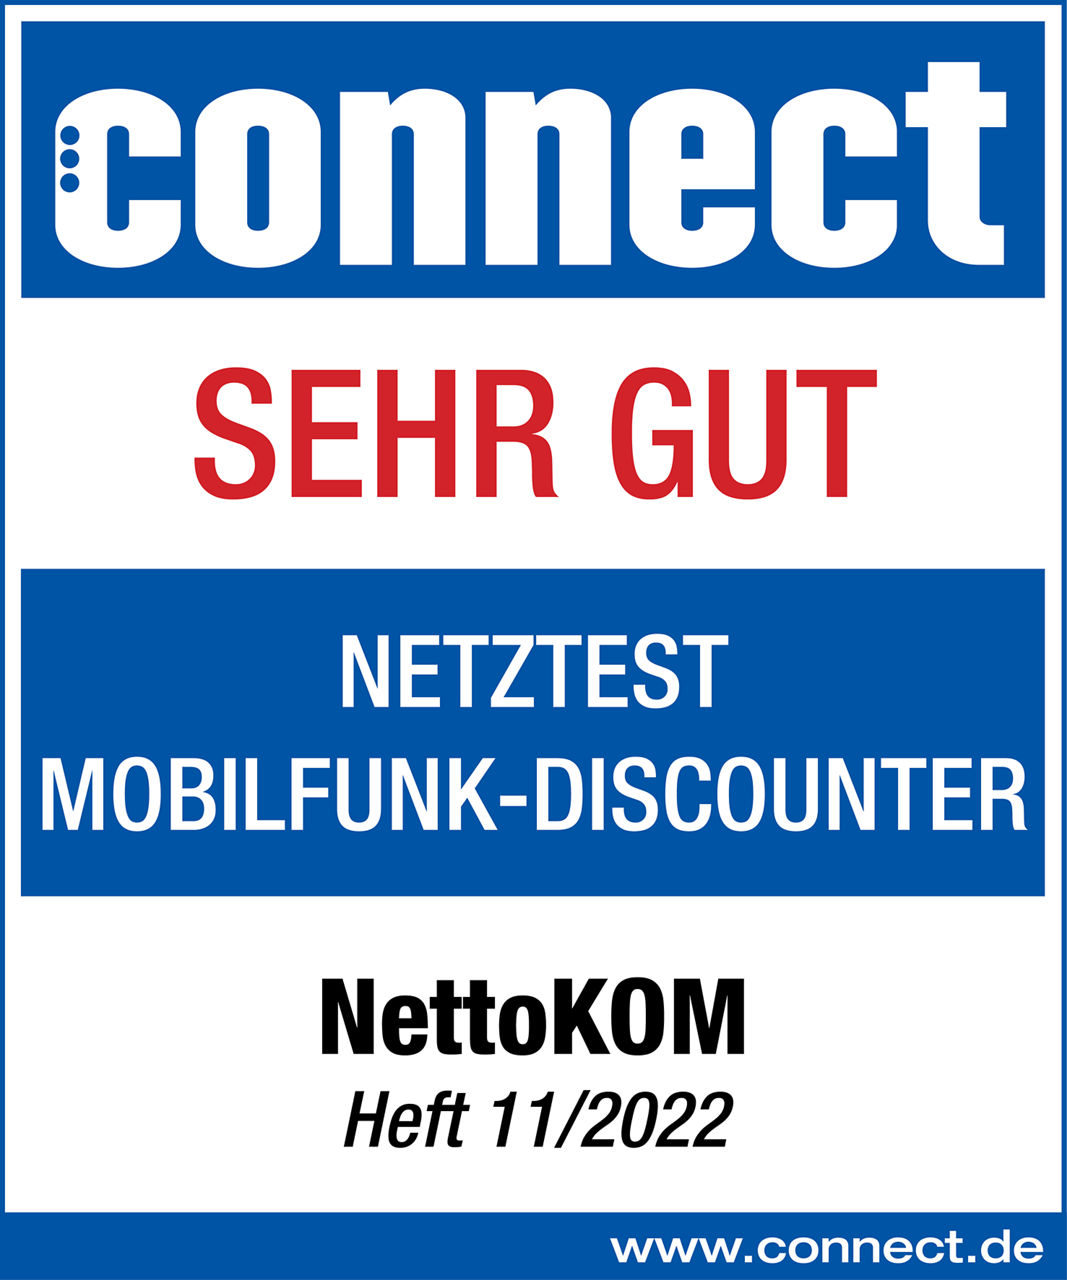 Connect bewertet 2022 die Netzqualität von Nettokom unter allen Mobilfunk Discountern mit der Note Sehr gut 